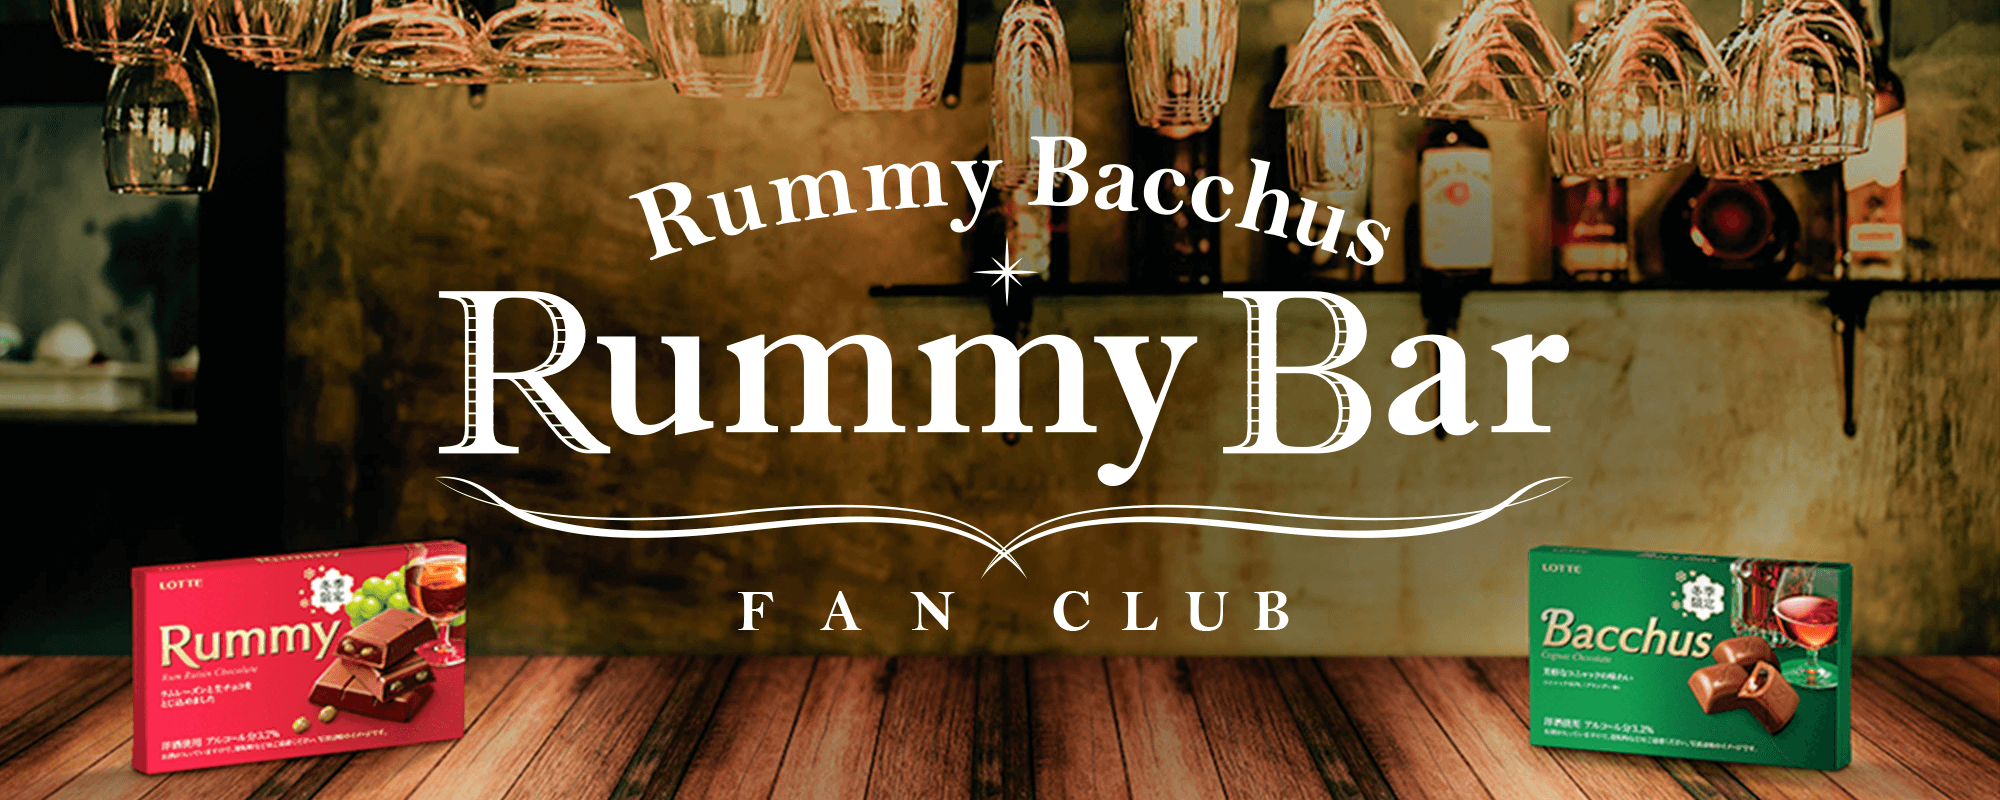 Rummy Bacchus Rummy Bar FAN COMMUNITY